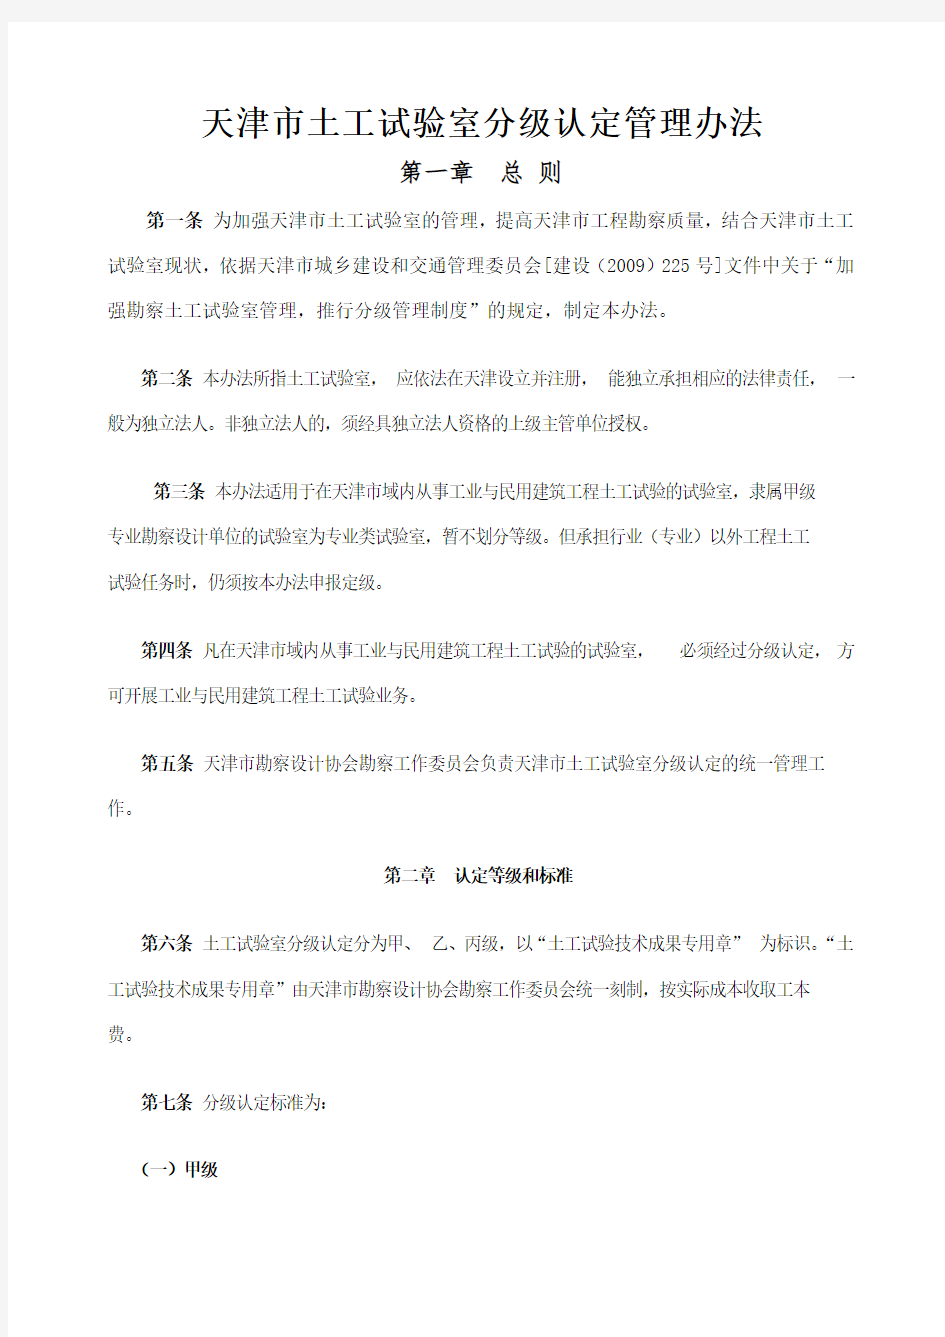 天津市土工试验室分级管理办法(内容概要)